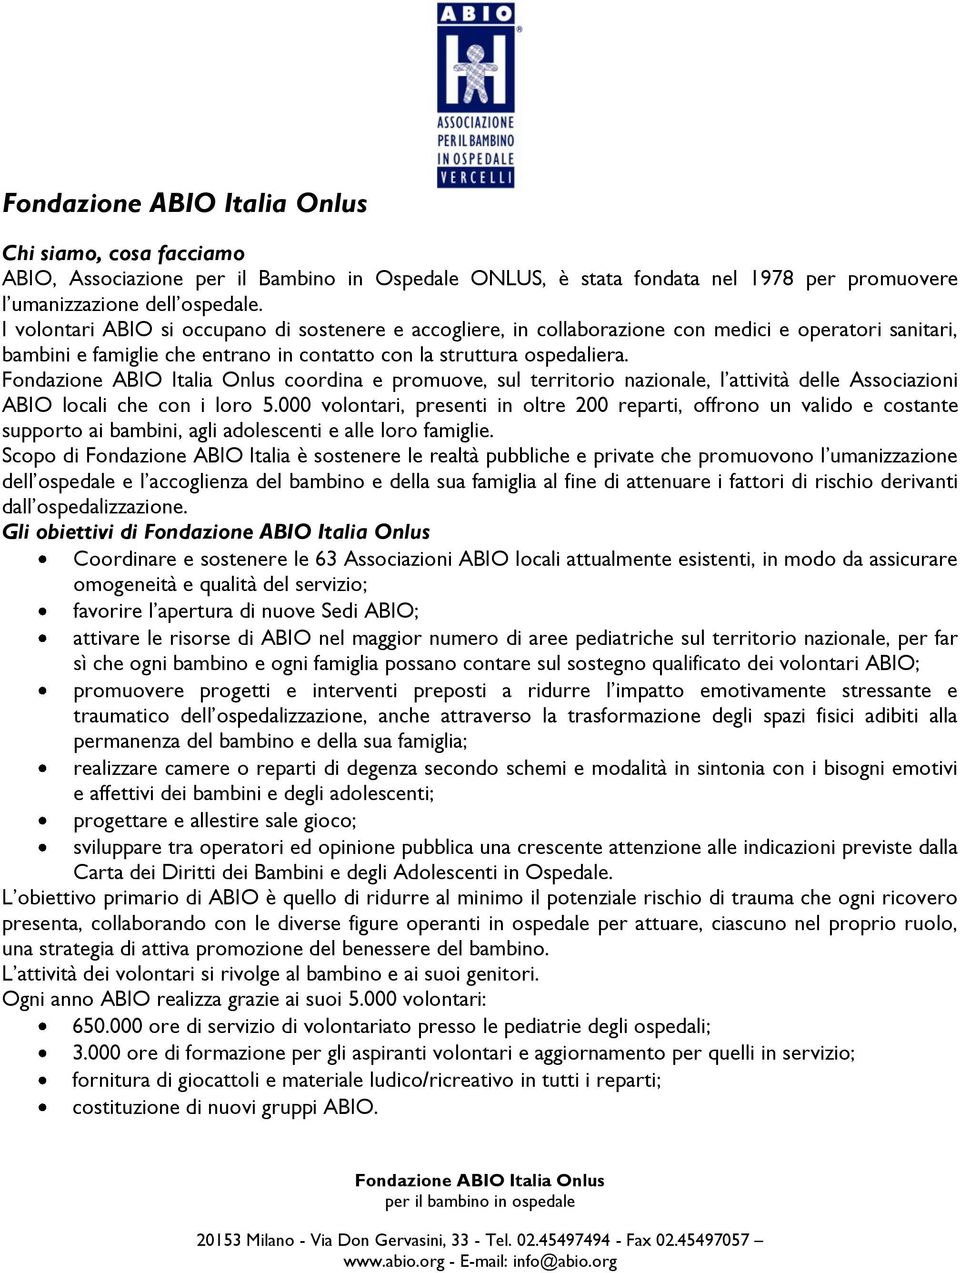 Fondazione ABIO Italia Onlus coordina e promuove, sul territorio nazionale, l attività delle Associazioni ABIO locali che con i loro 5.